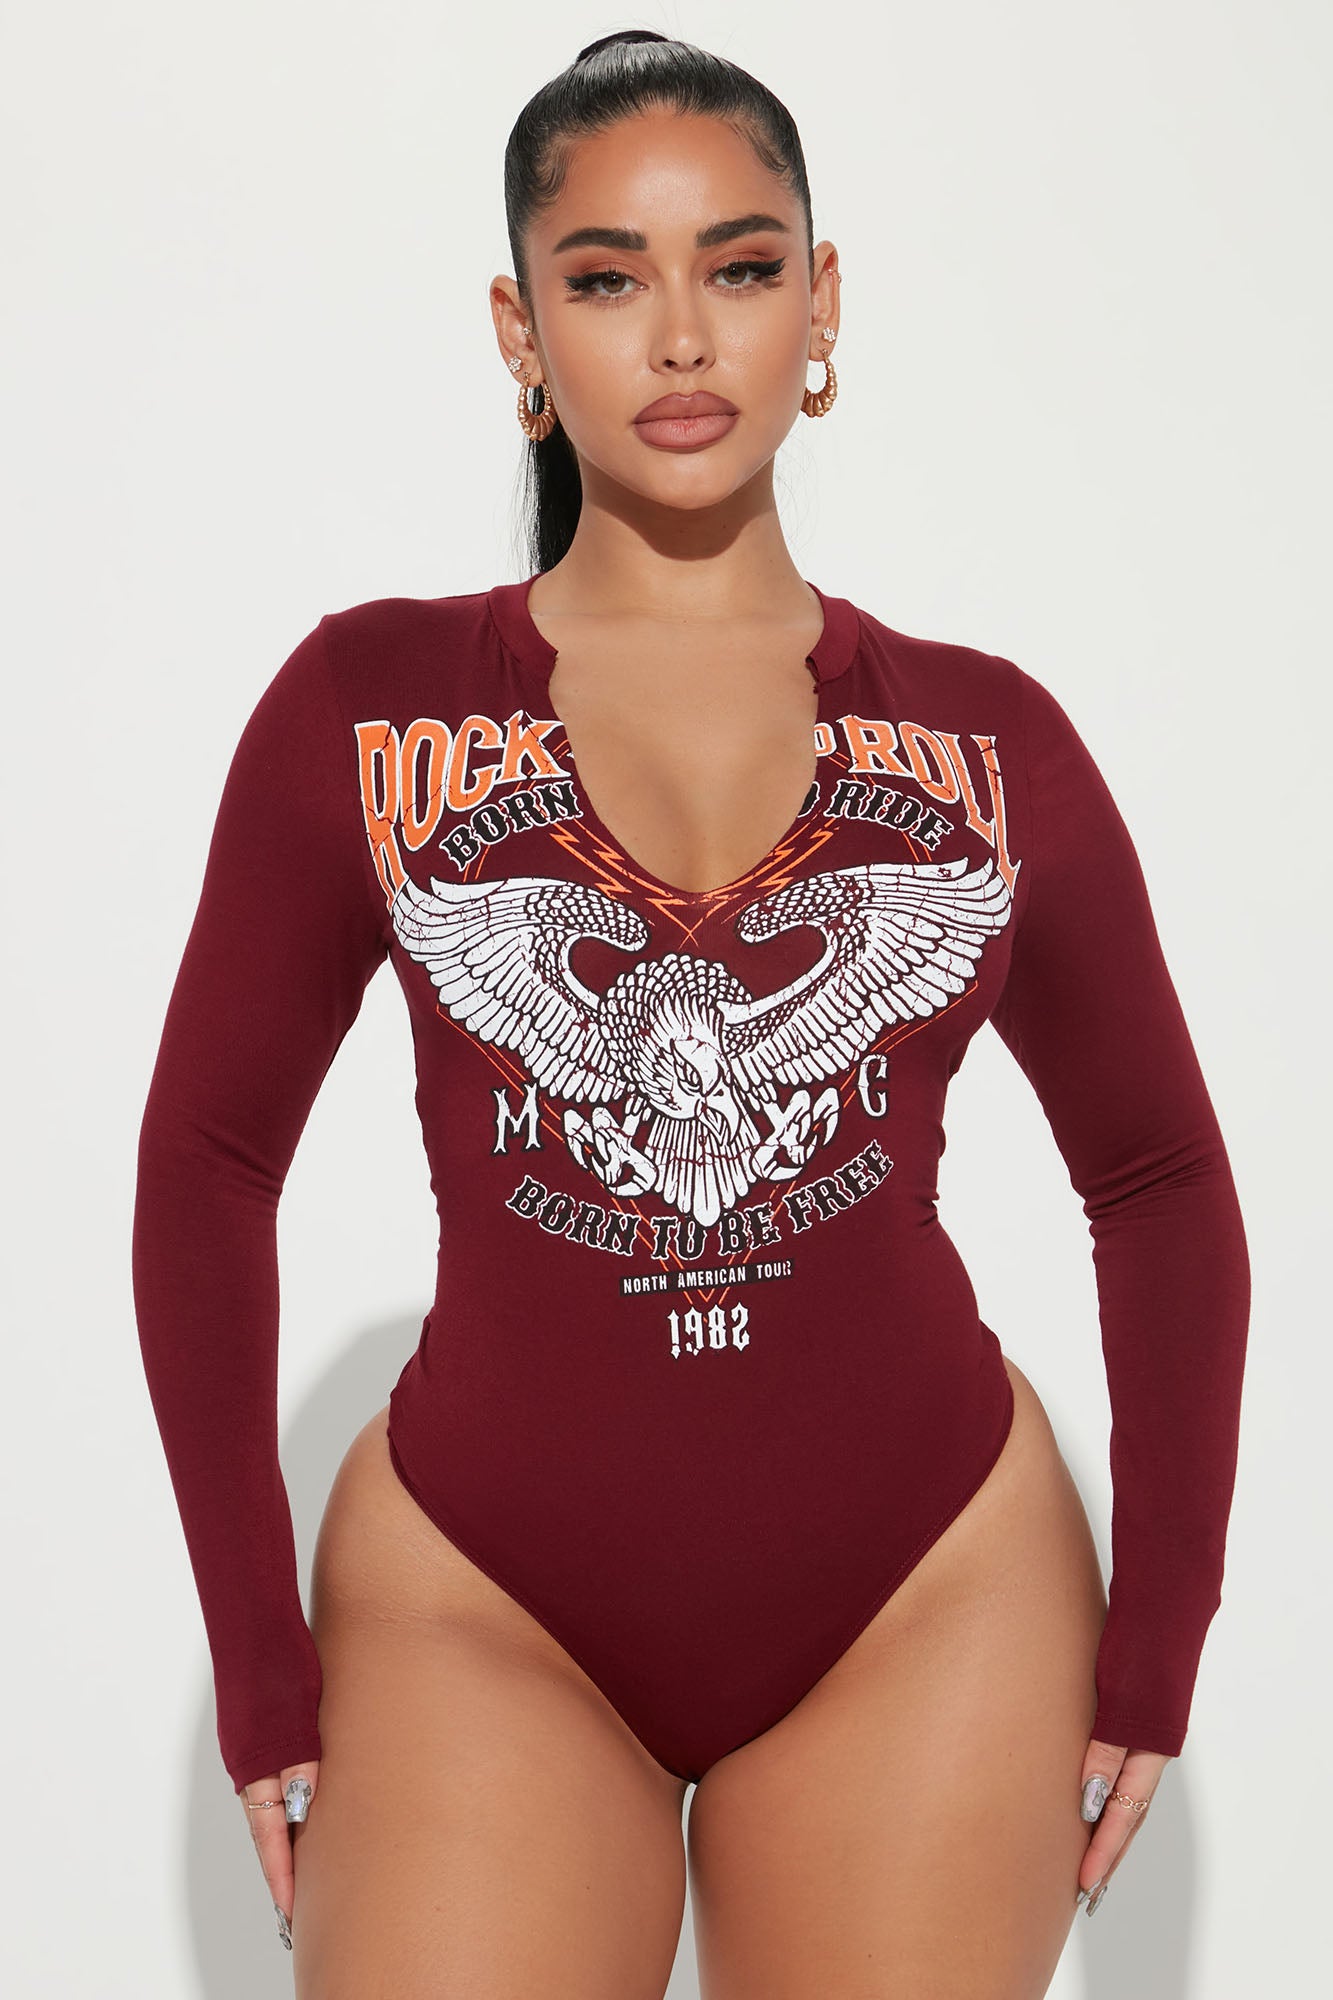 Rocker Chic Graphic Bodysuit - Burgundy